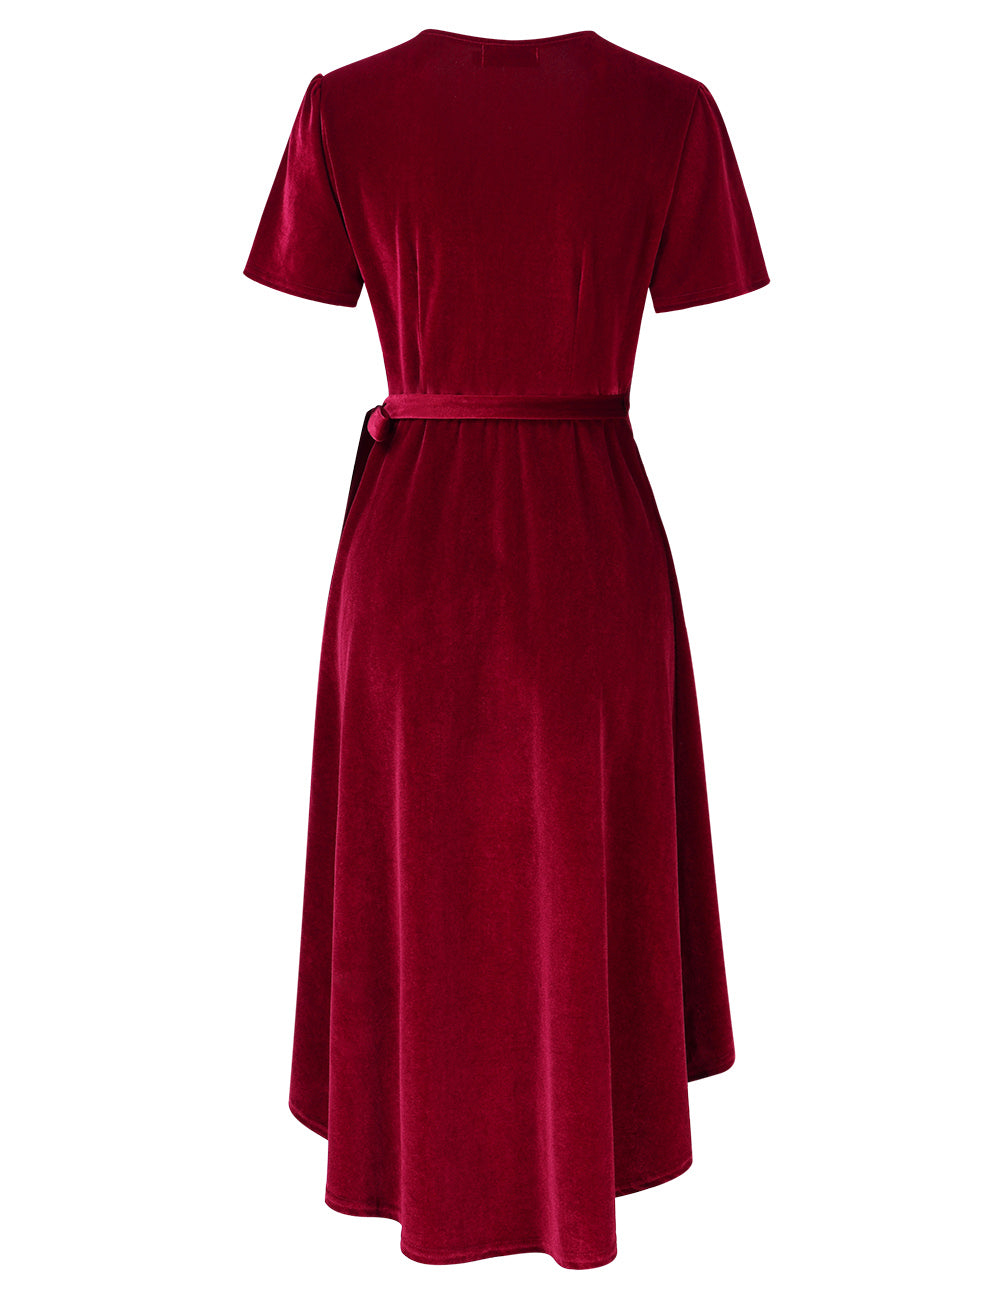 YESFASHION Women Velvet V-Neck Short Sleeve Empire Party Midi Dress Wine Red